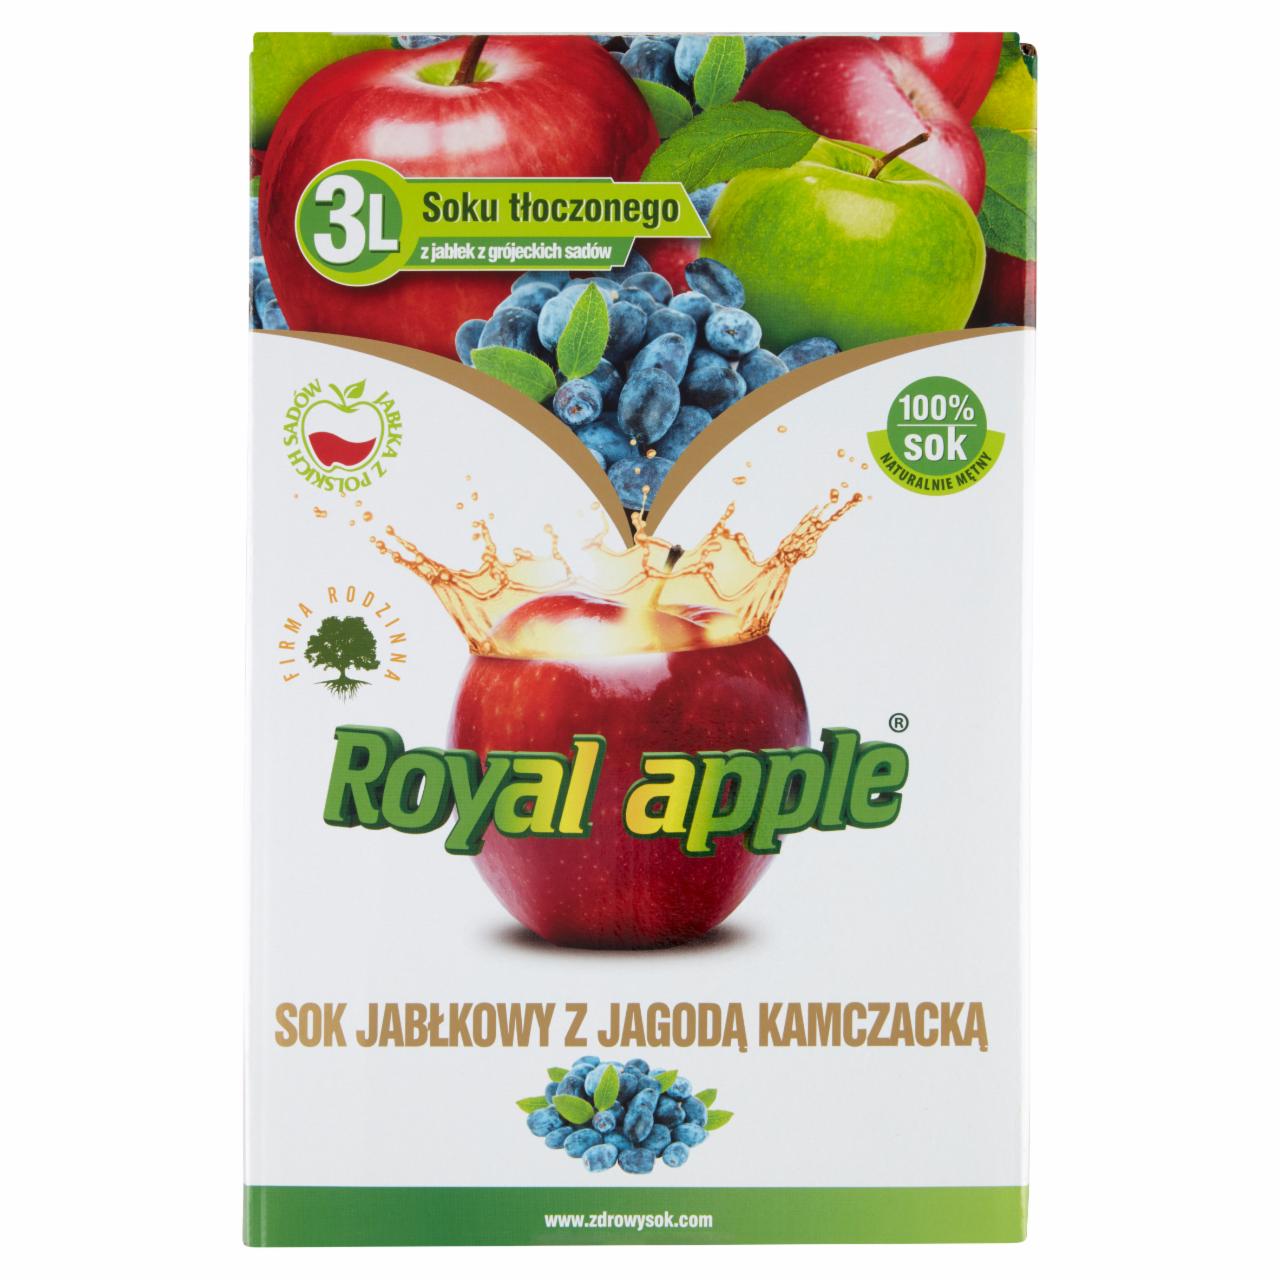 Zdjęcia - Royal apple Sok jabłkowy z jagodą kamczacką 3 l